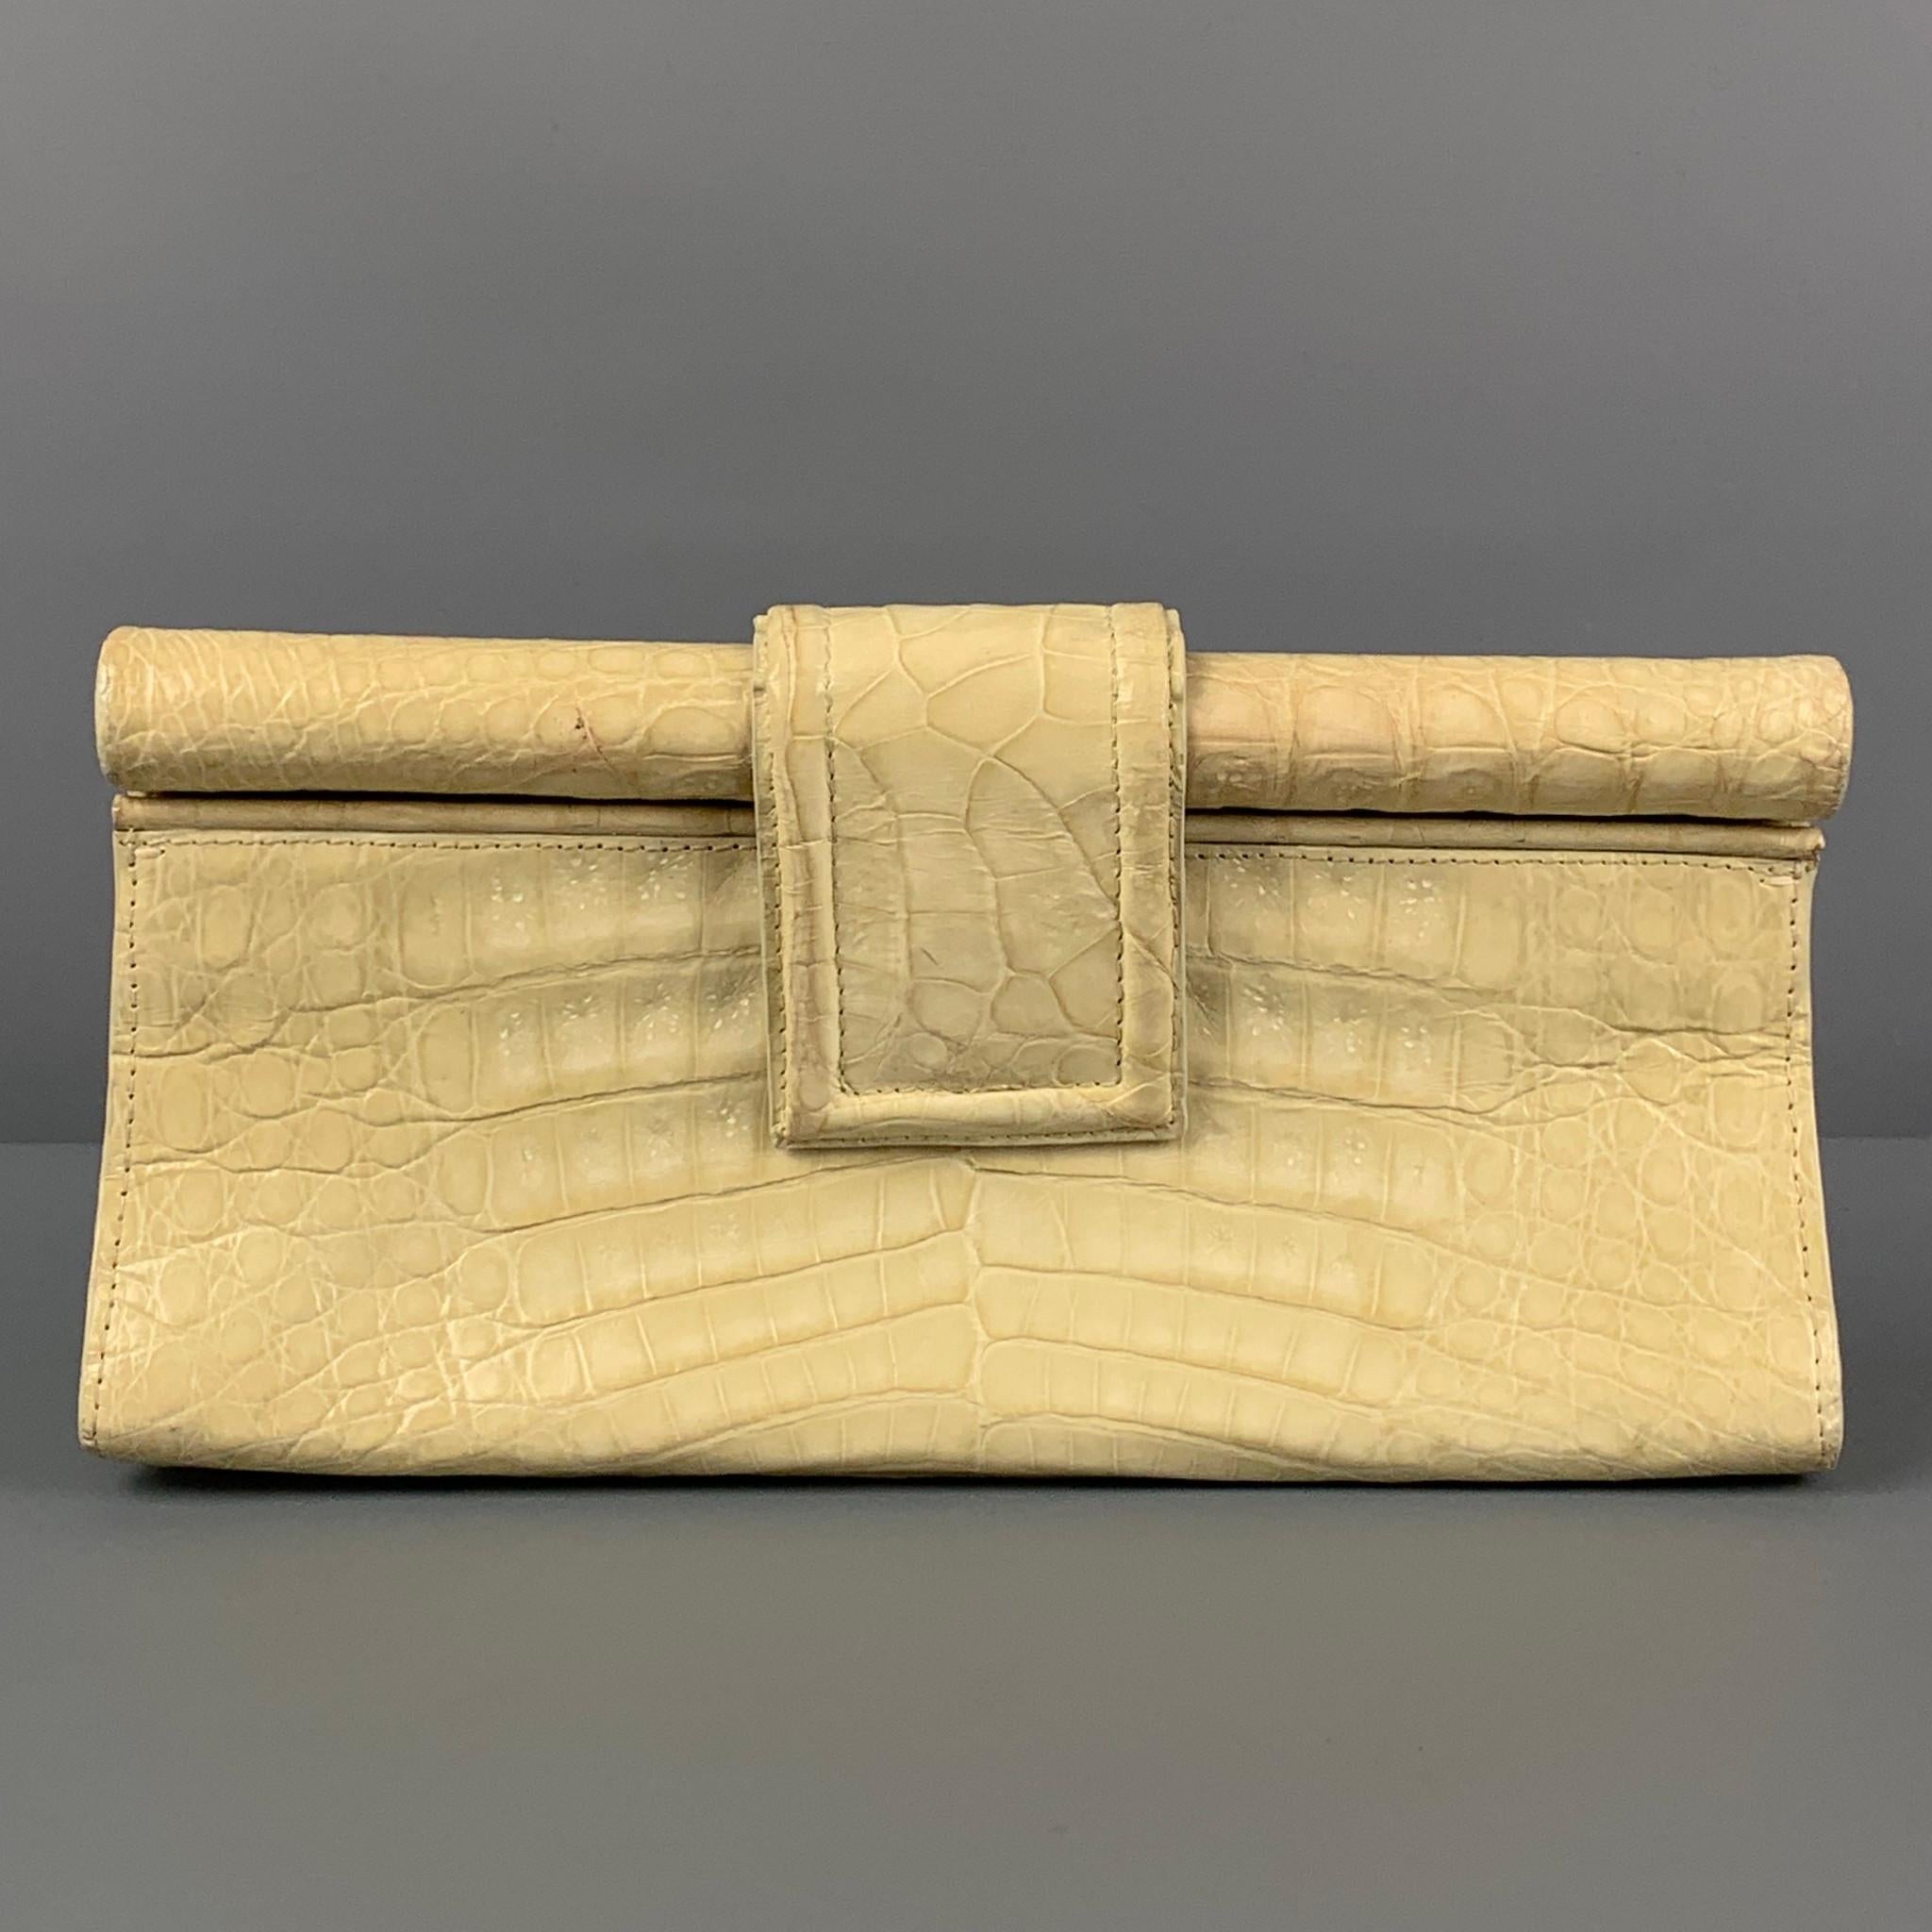 RED CROCODILE Skin Baguette CLUTCH Shoulder Bag - Vintage Skins